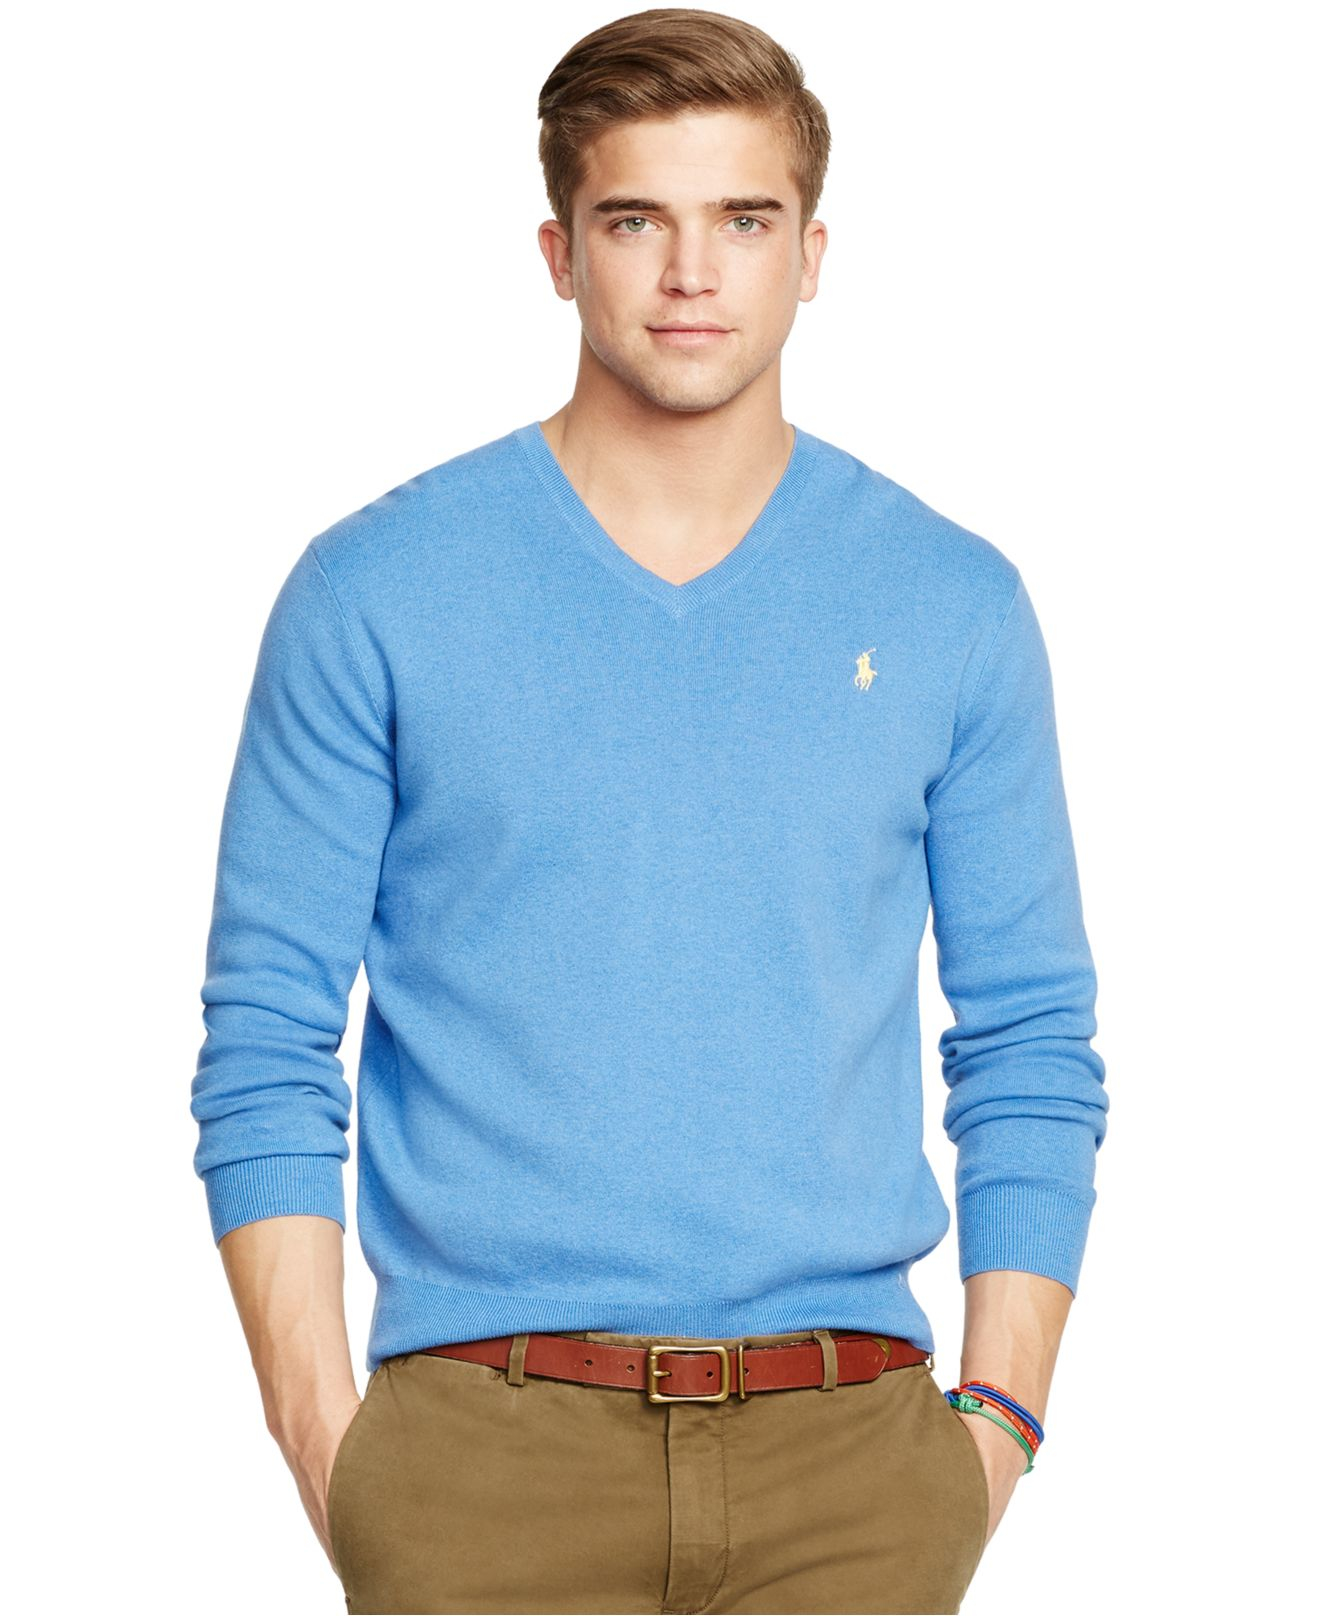 Polo Ralph Lauren Pima V-neck Sweater in Blue for Men - Lyst